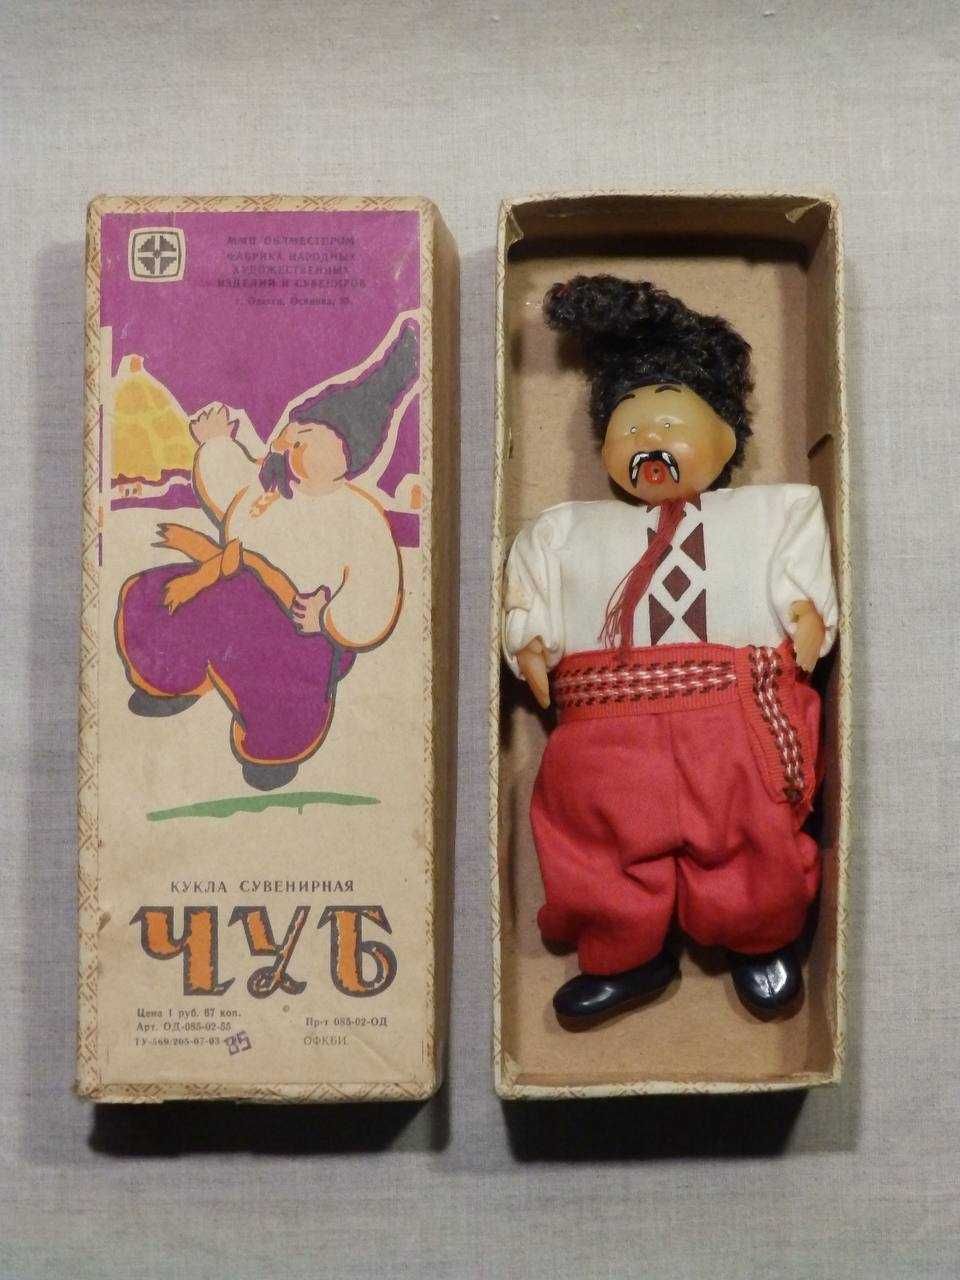 Кукла ЧУБ Казак Козак Советская игрушка в Родной коробке СССР 1980-е